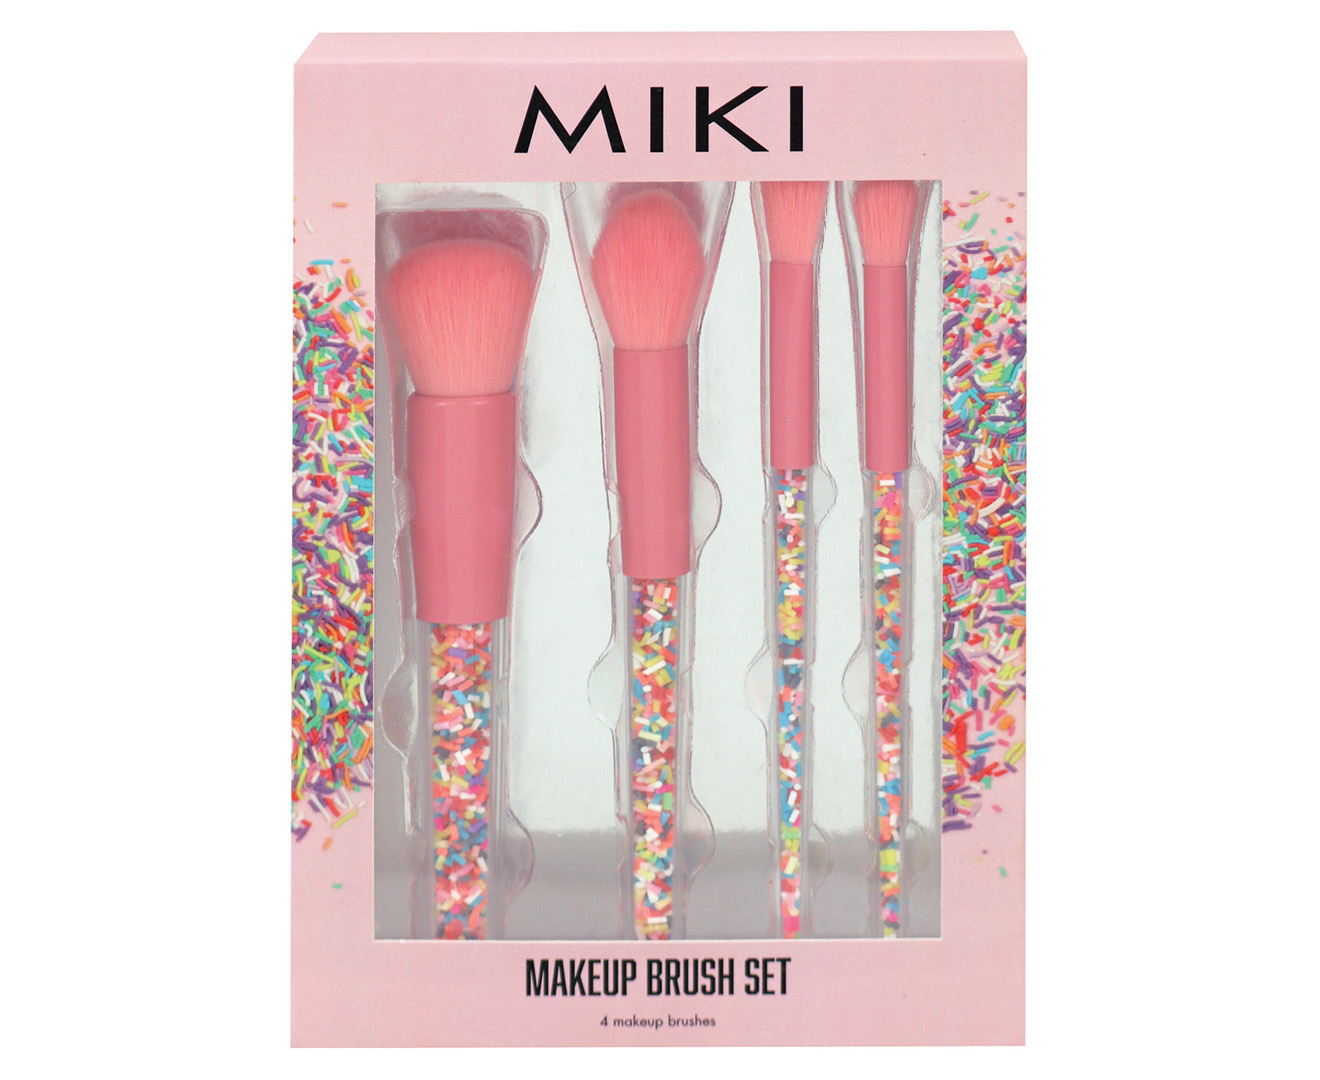 Miki Sprinkle 4-Piece Makeup Brush Set | Www.catch.com.au